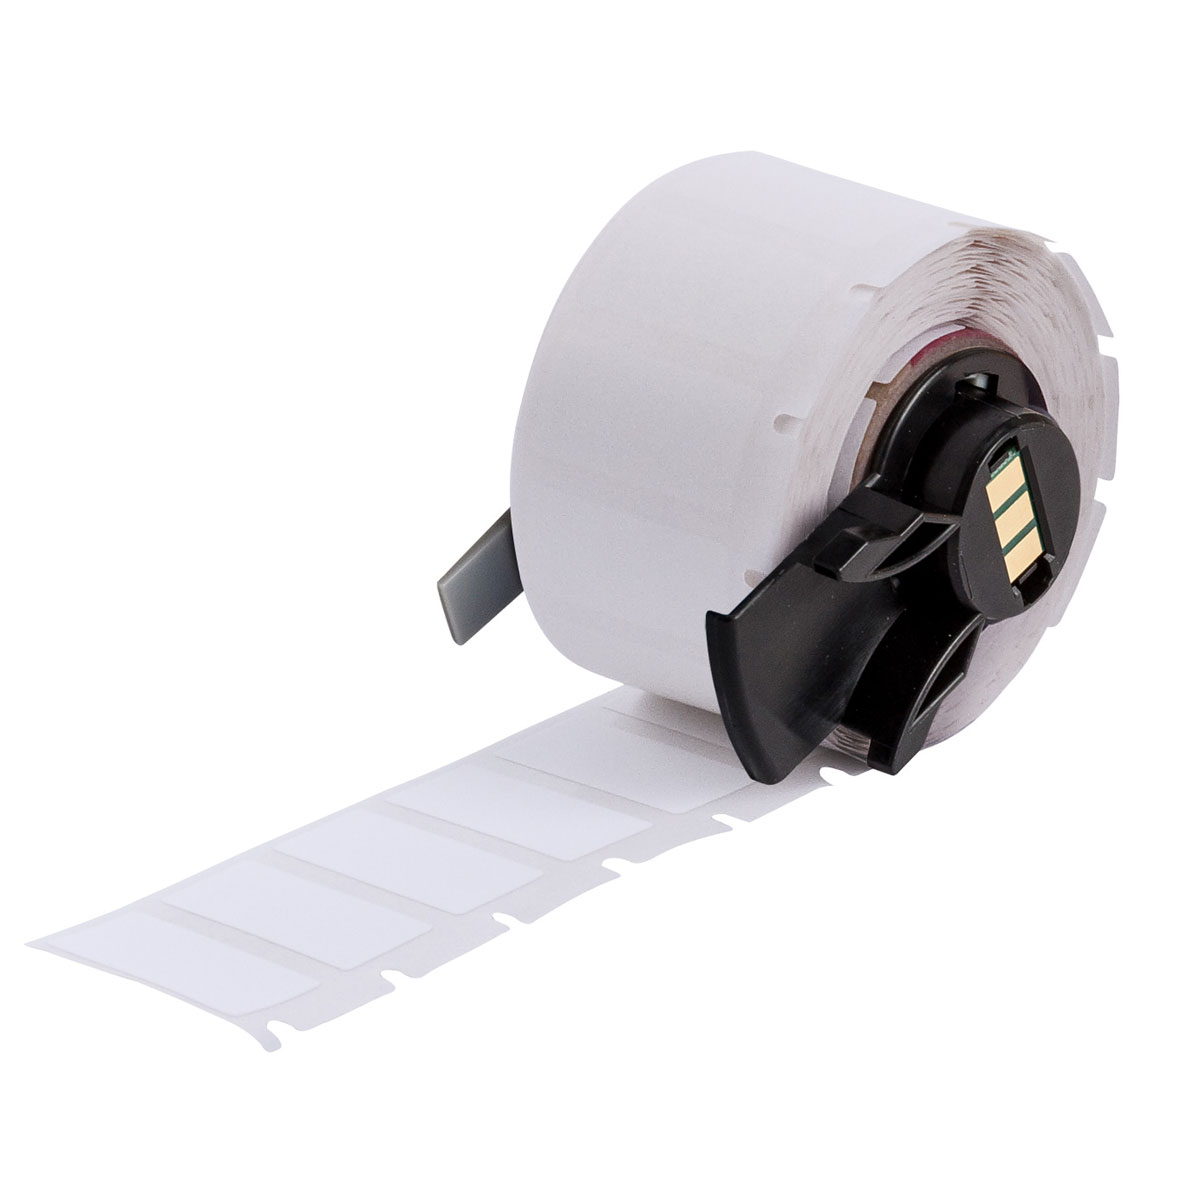 Étiquettes d'identification générale en polyester blanc mat ultra-résistant pour étiqueteuses BMP61, M611 et TLS2200